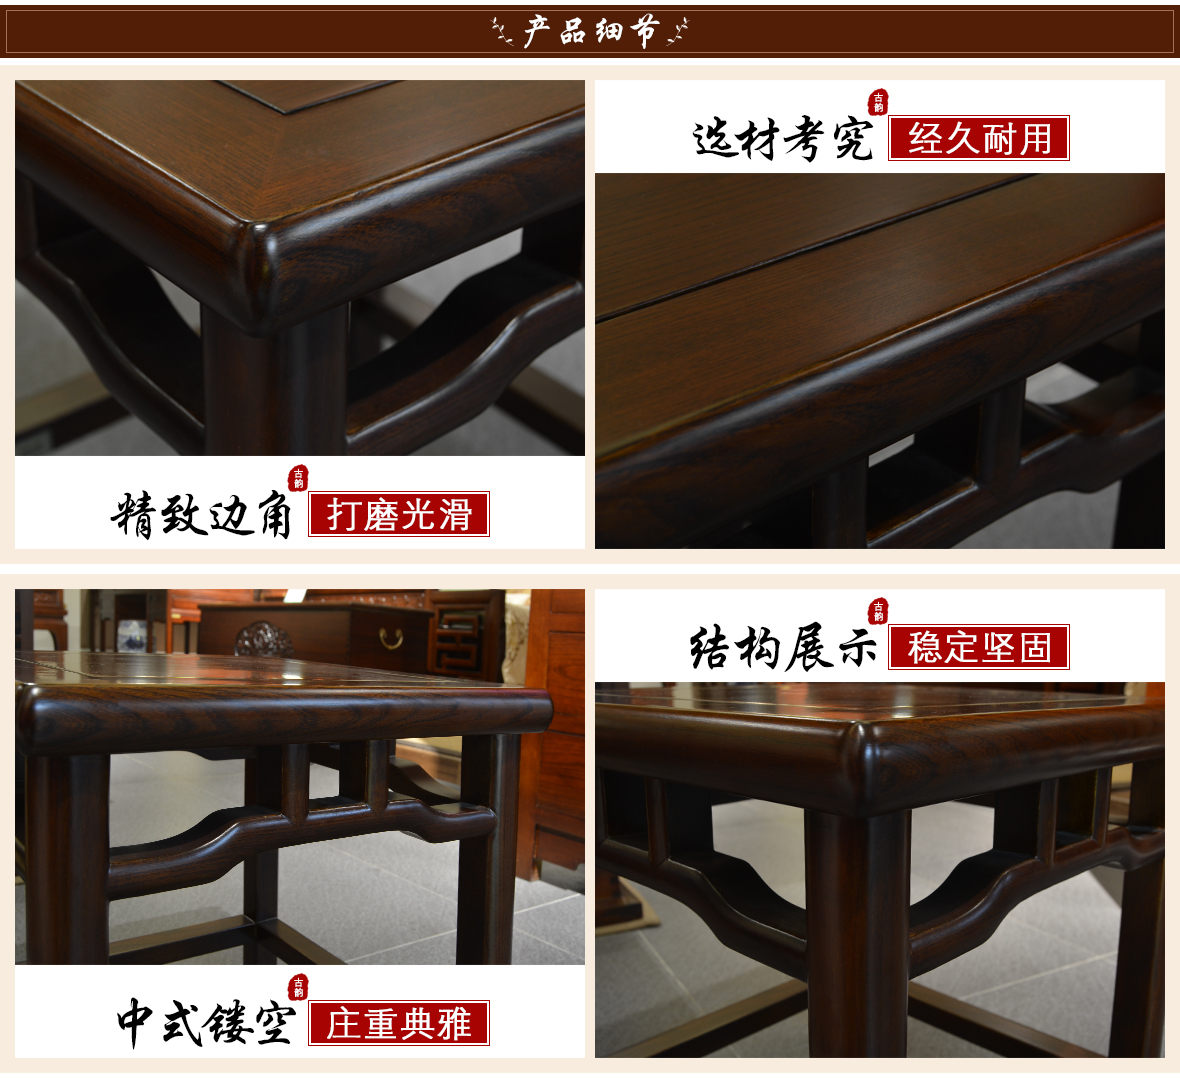 祥华坊家具 XJD-YD01113型号碧月梳妆凳 中式古典实木家具 细节展示